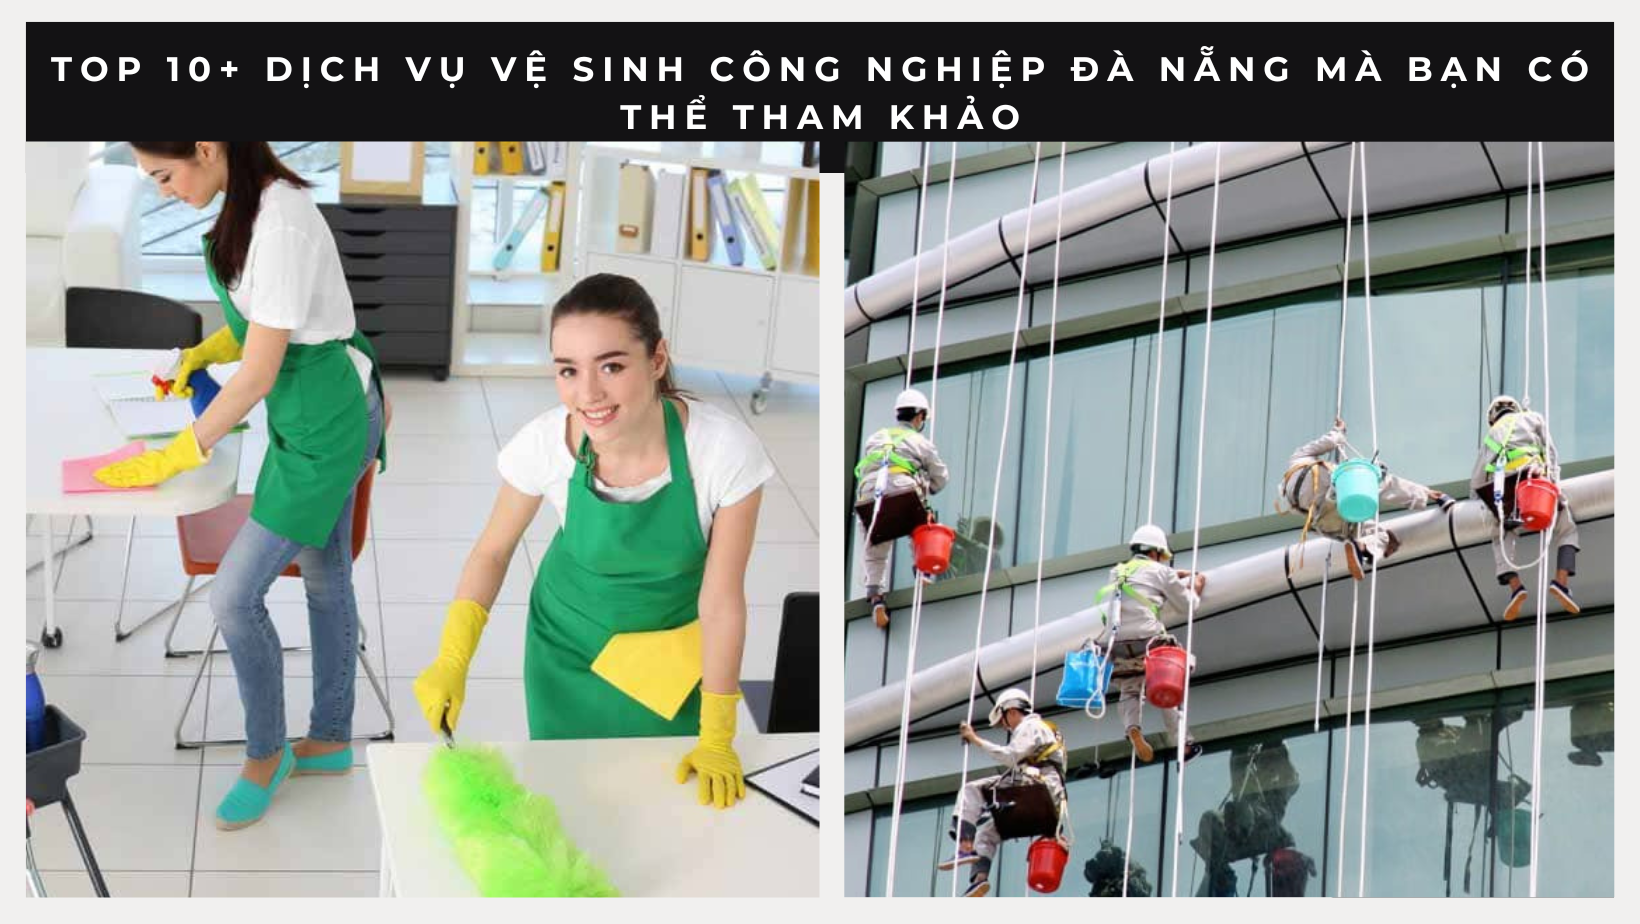 Top 10+ dịch vụ vệ sinh công nghiệp Đà Nẵng mà bạn có thể tham khảo